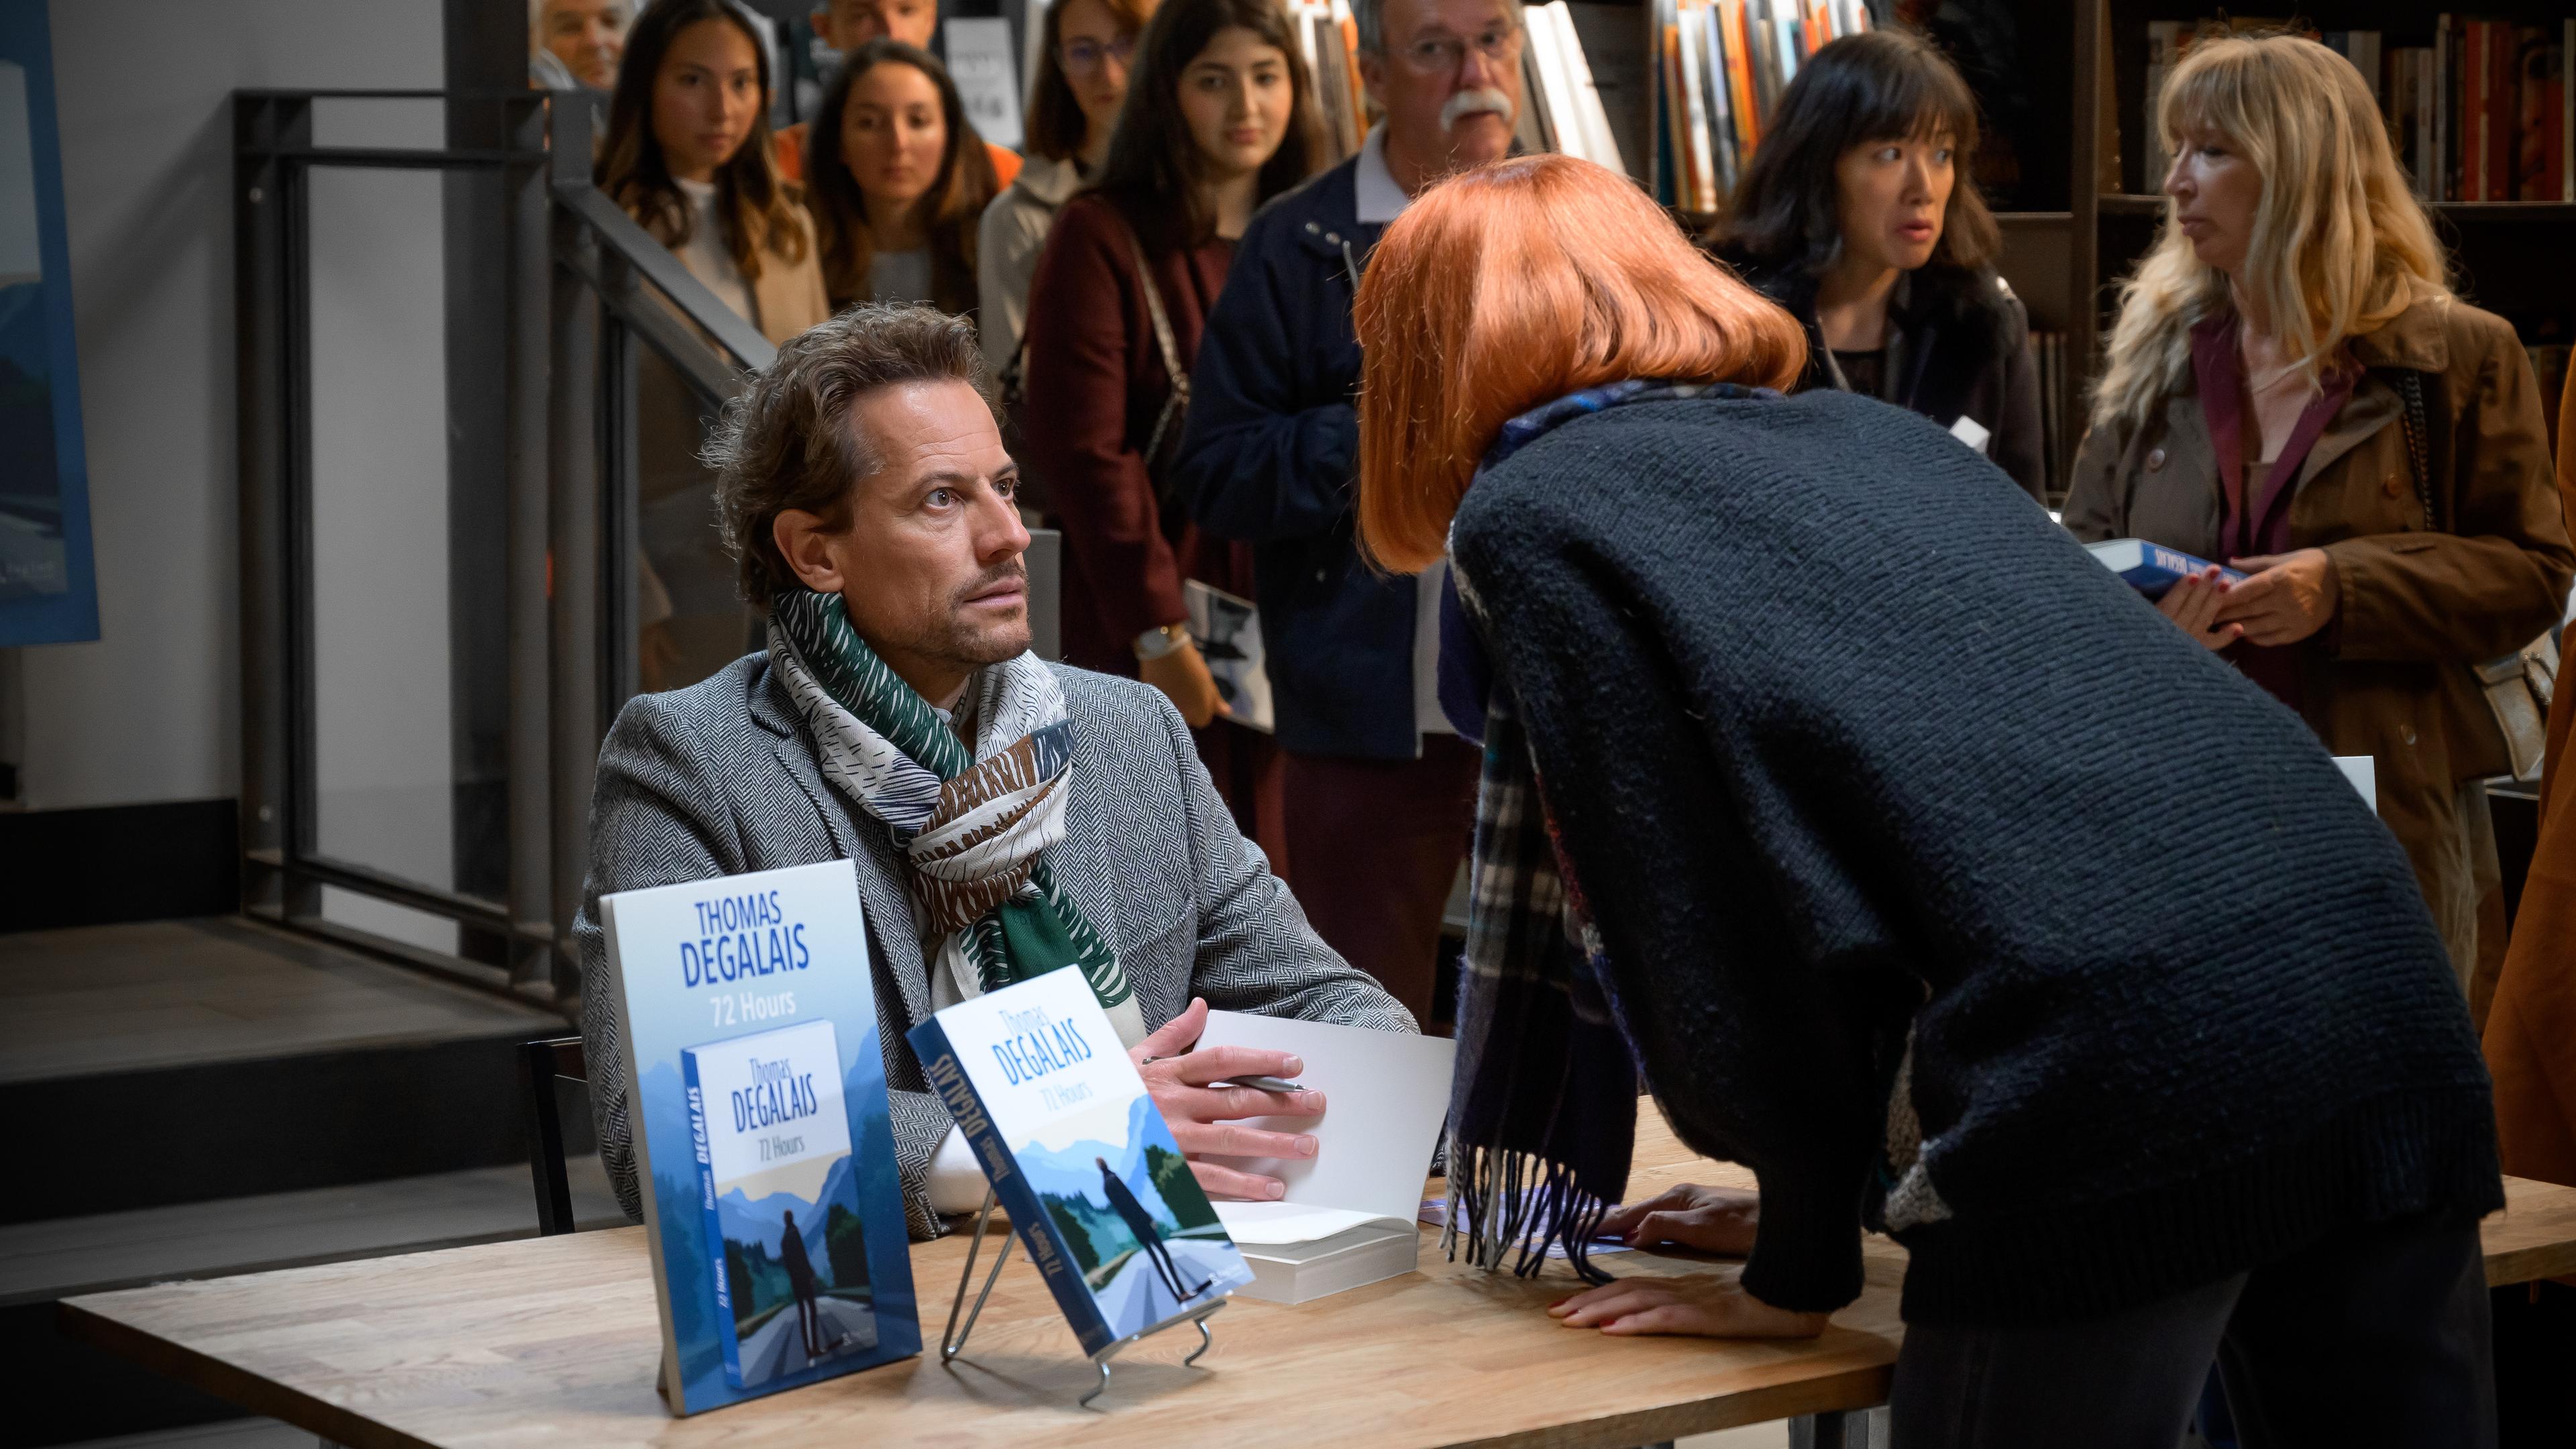 "Das Mädchen und die Nacht (1)": Autor Thomas (Ioan Gruffudd) sitzt bei seiner Autogrammstunde mit verblüfftem Gesichtsausdruck an einem Tisch. Eine junge Frau mit rothaariger Perücke beugt sich zu ihm vor. Im Hintergrund stehen viele Menschen in einer Schlange um sich ein Autogramm zu holen.